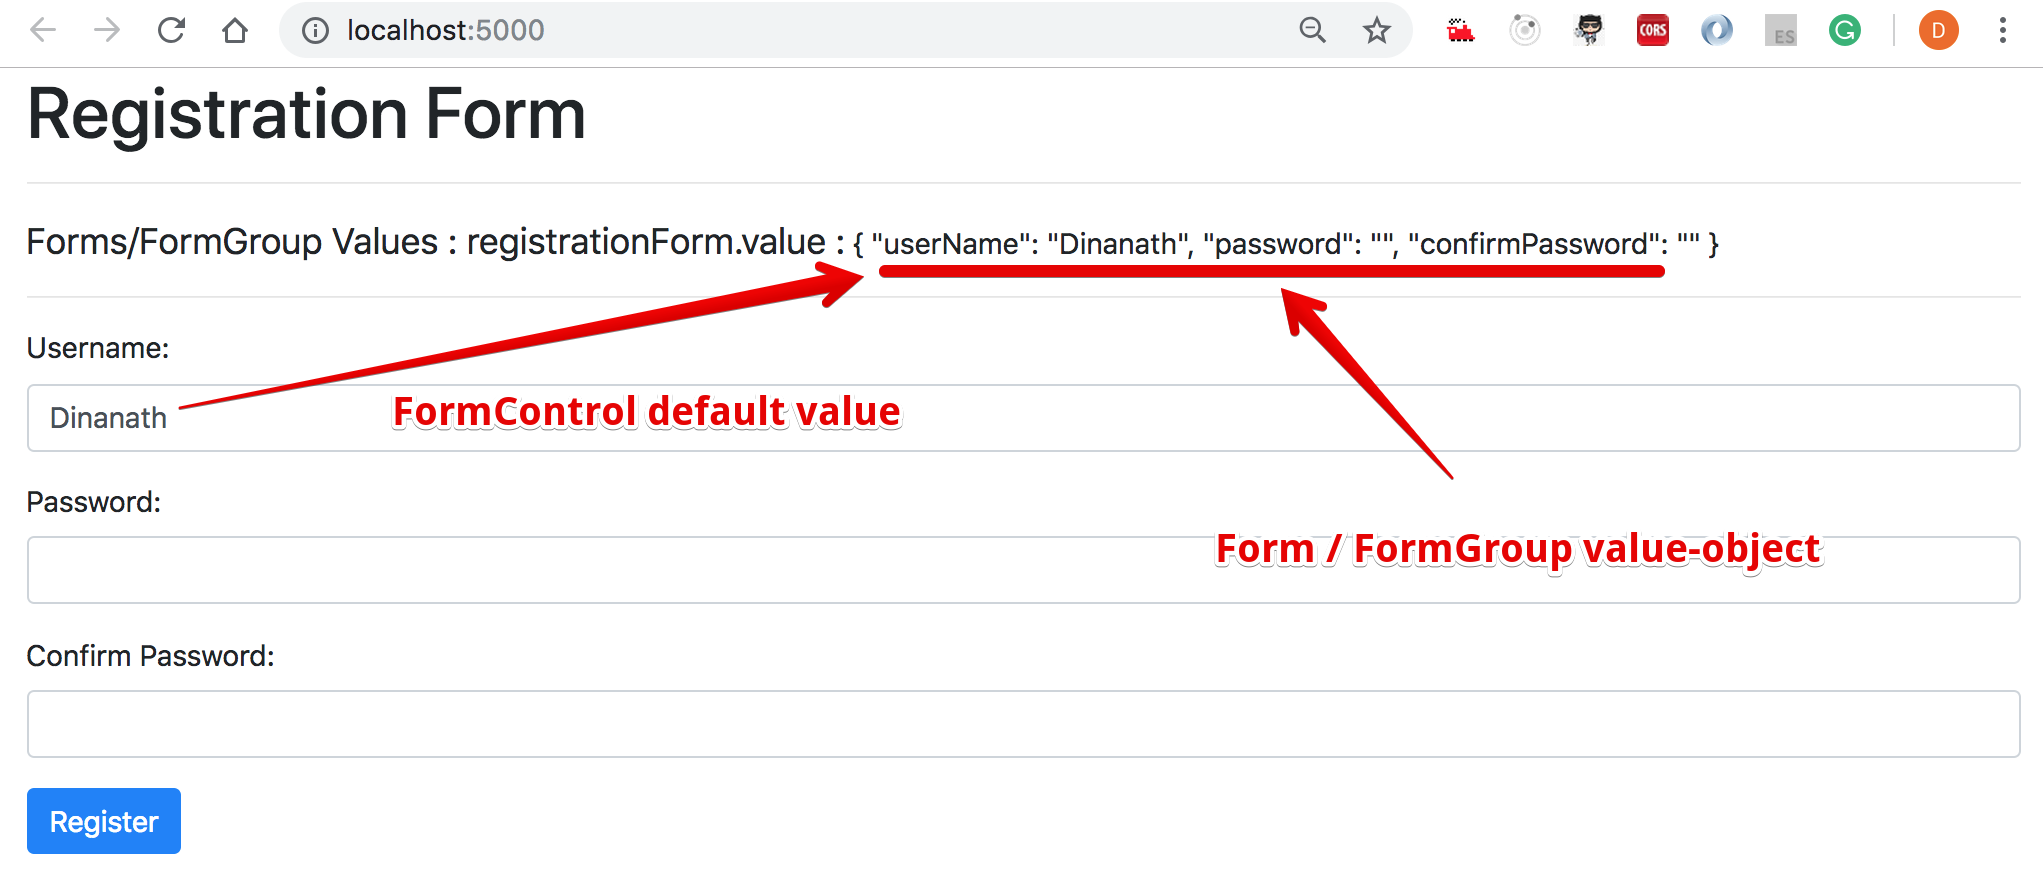 Form Model, FormControl/FormGroup - defualt values